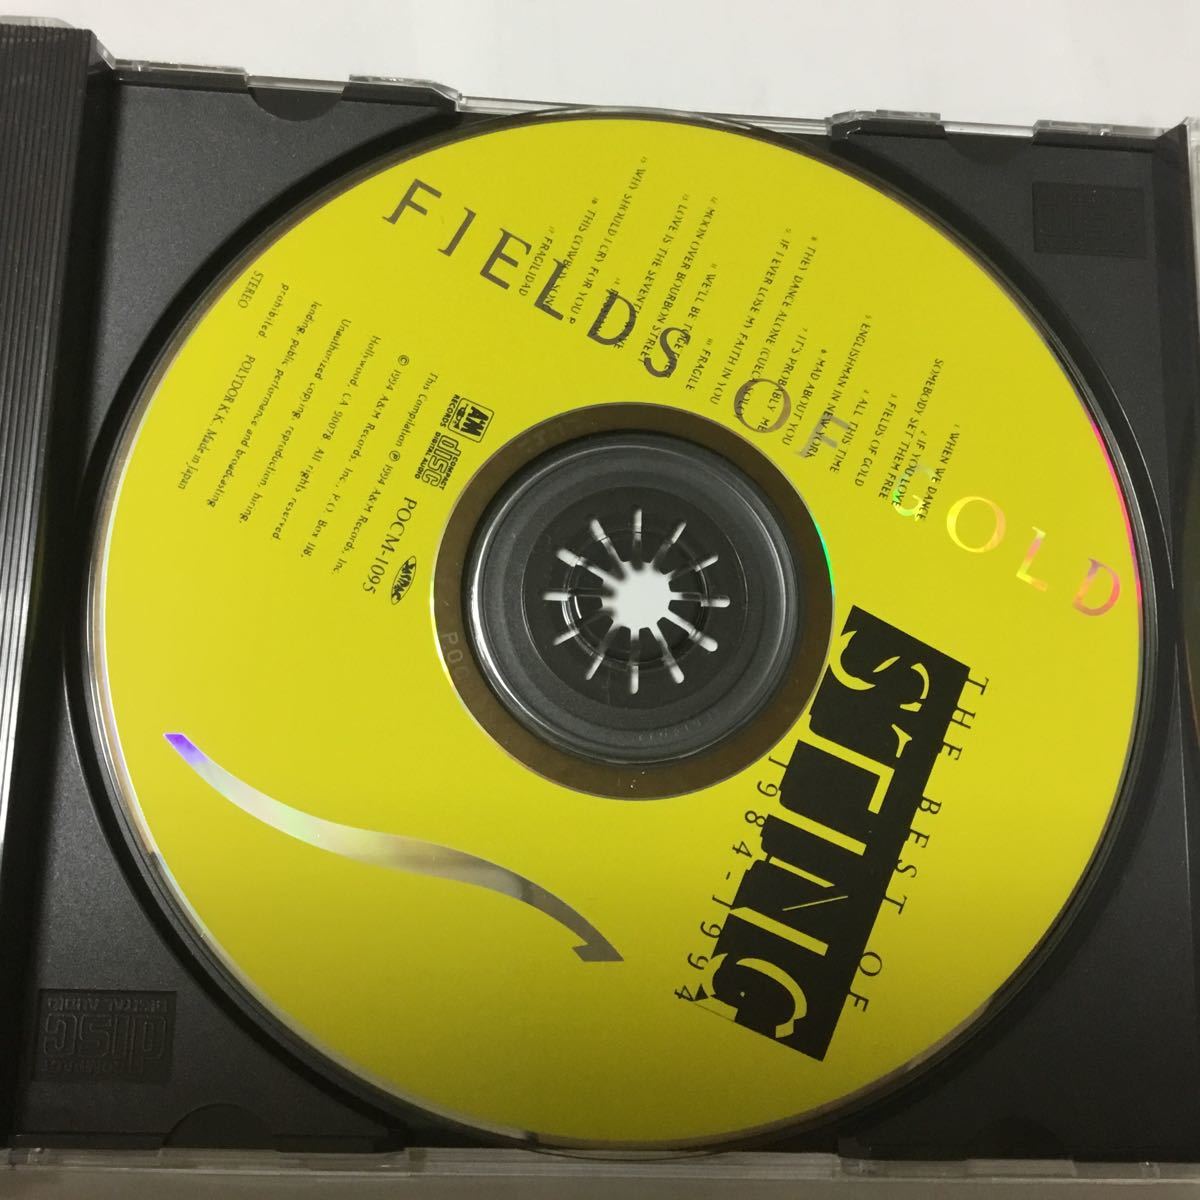 フィールズ・オブ・ゴールド~ベスト・オブ・スティング 1984-1994 Fields Of Gold: The Best Of Sting 国内盤　CDシングル付き